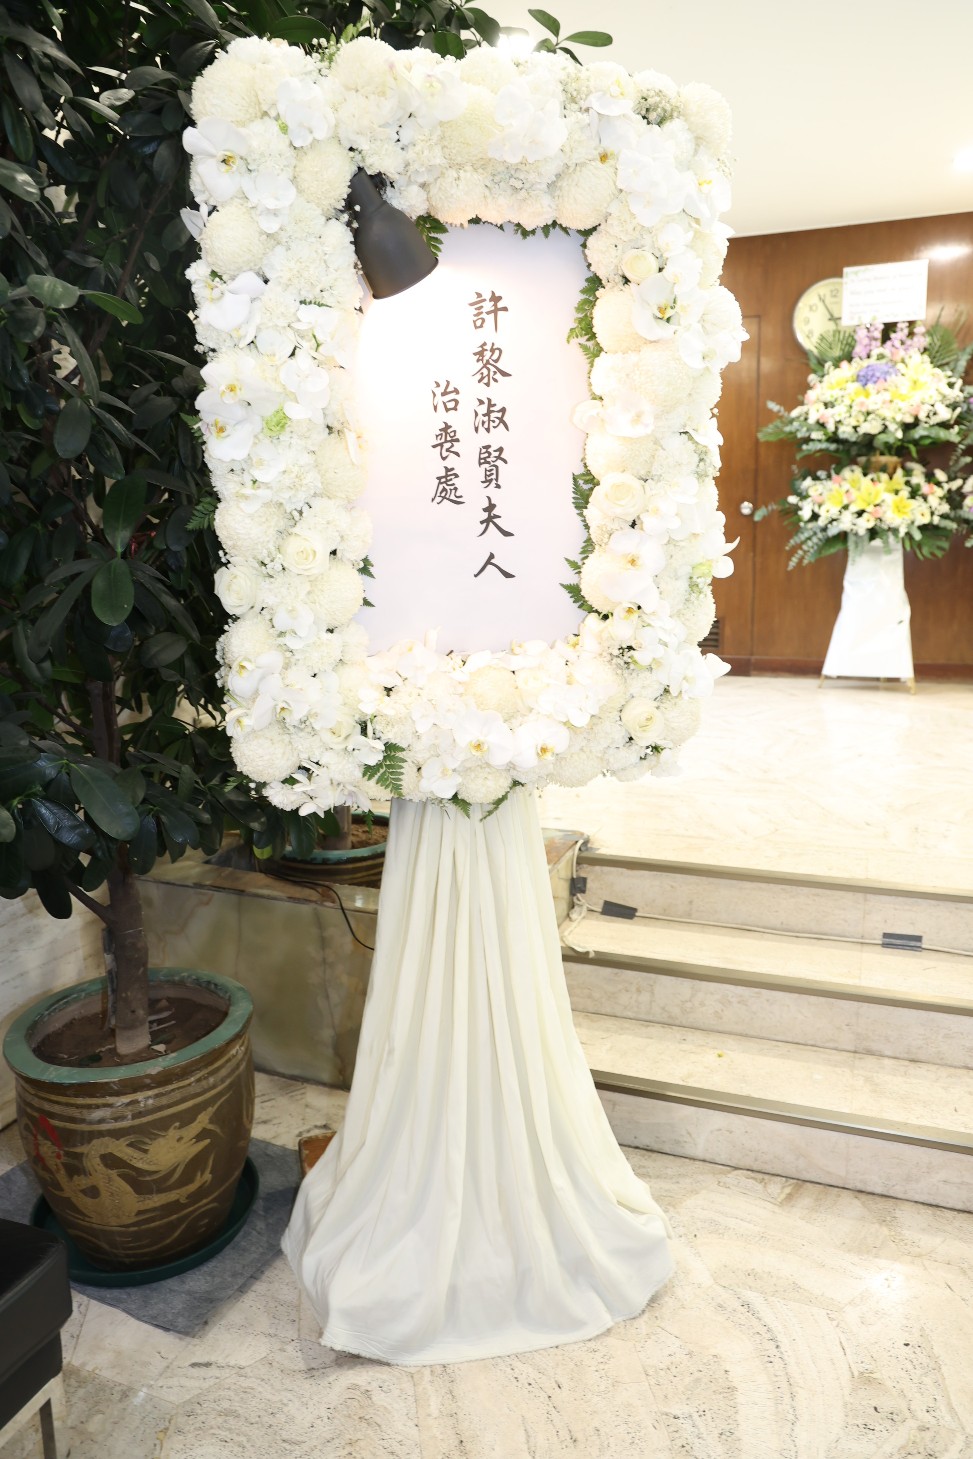 黎淑贤年初在香港殡仪馆设灵。